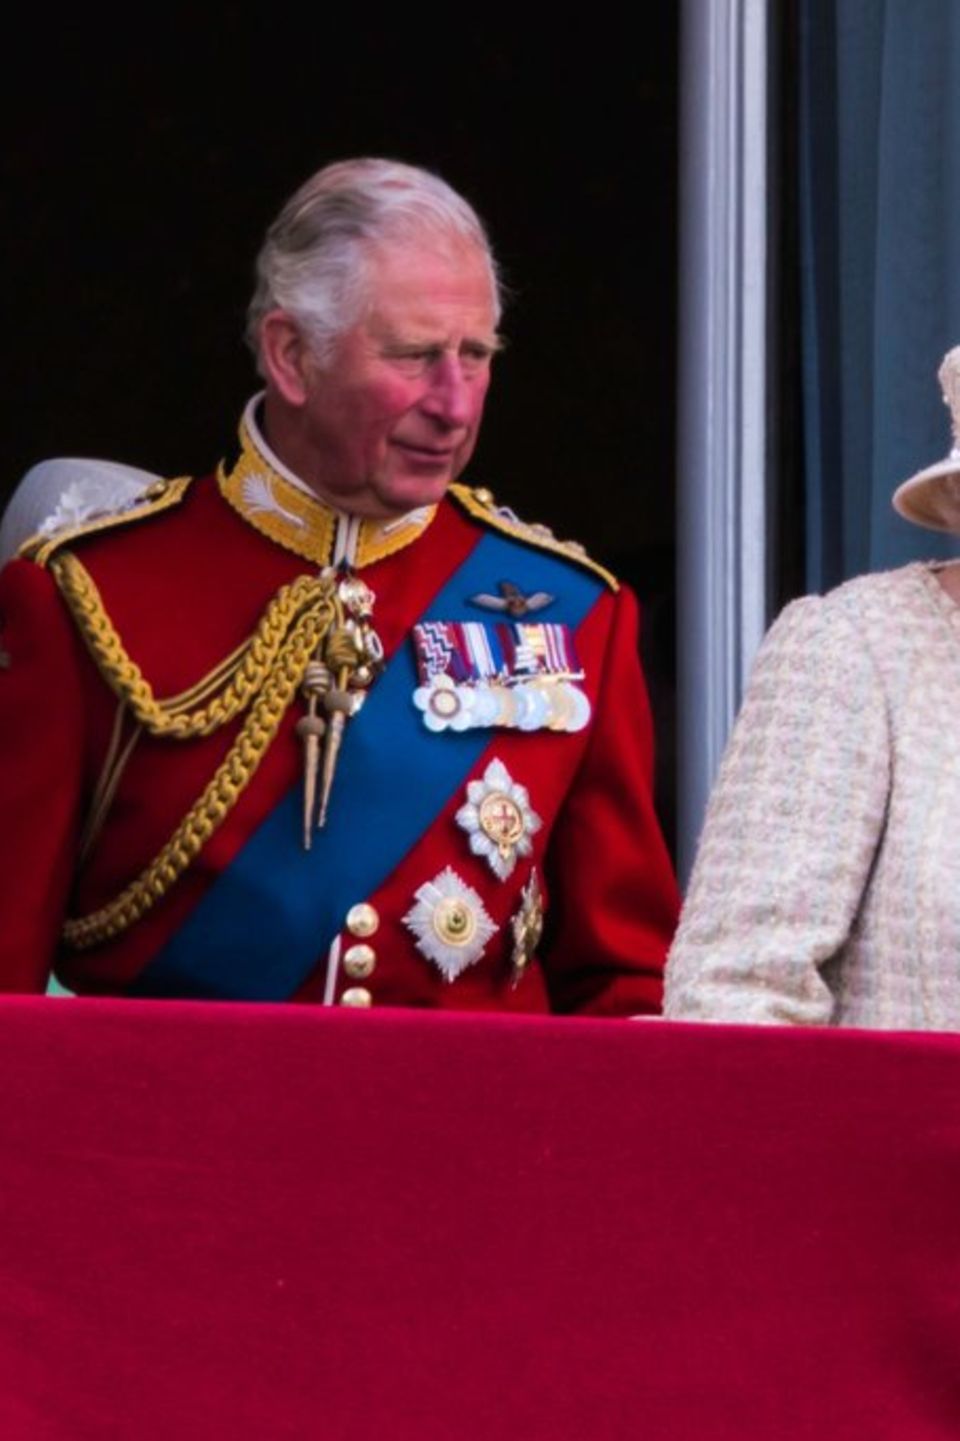 2019 zeigten sich Charles und seine Mutter anlässlich "Trooping the Colour" gemeinsam auf dem Balkon des Buckingham Palastes.